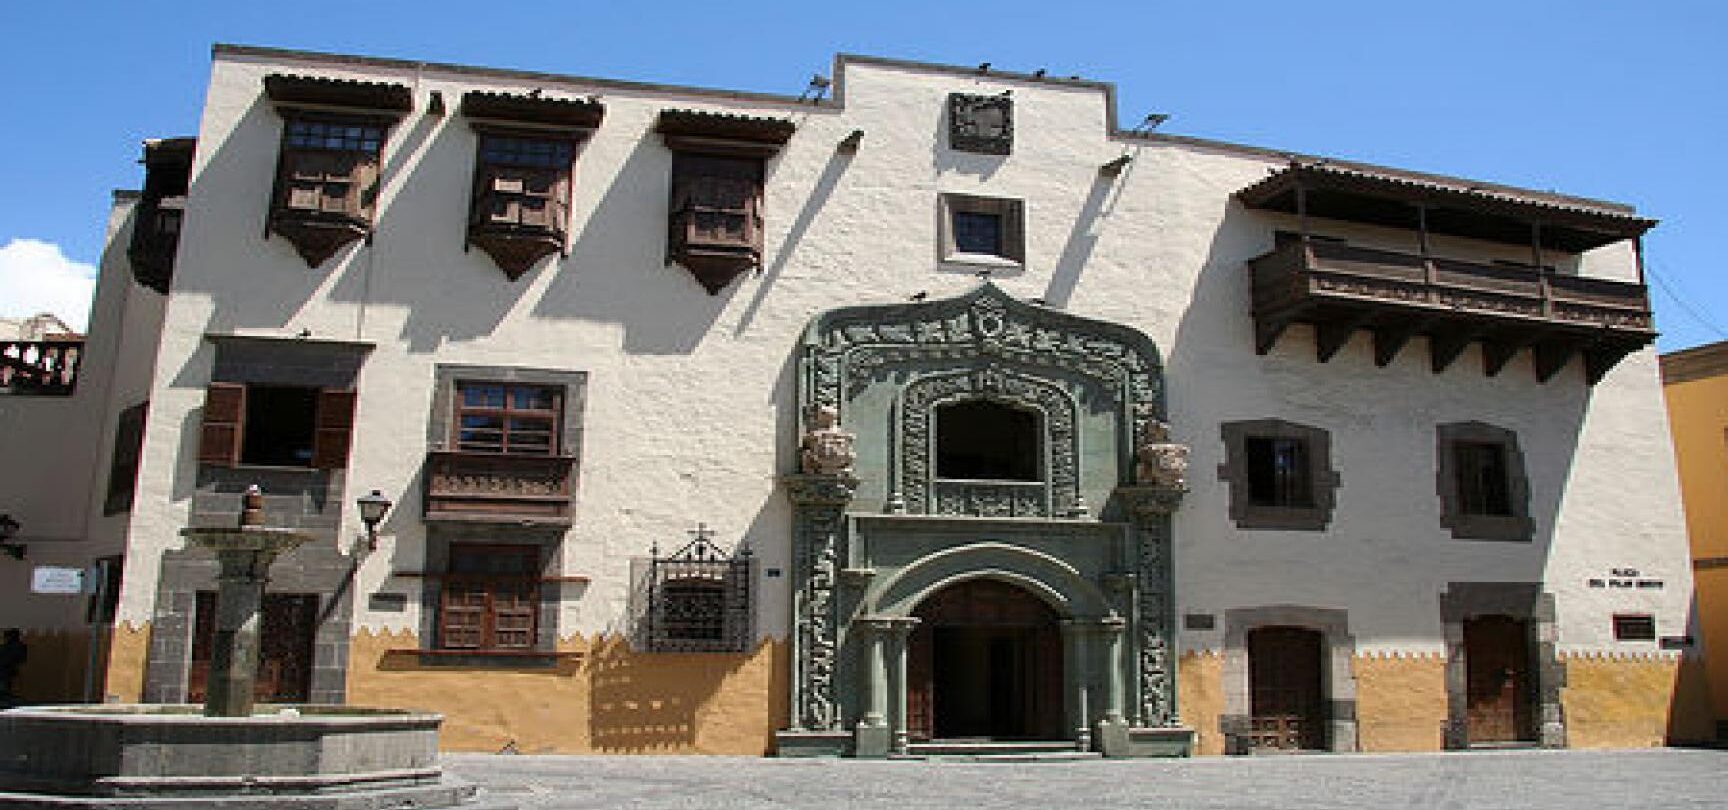 CASA DE COLÓN		Palmas de Gran Canaria (Las)	Las Palmas	Museo